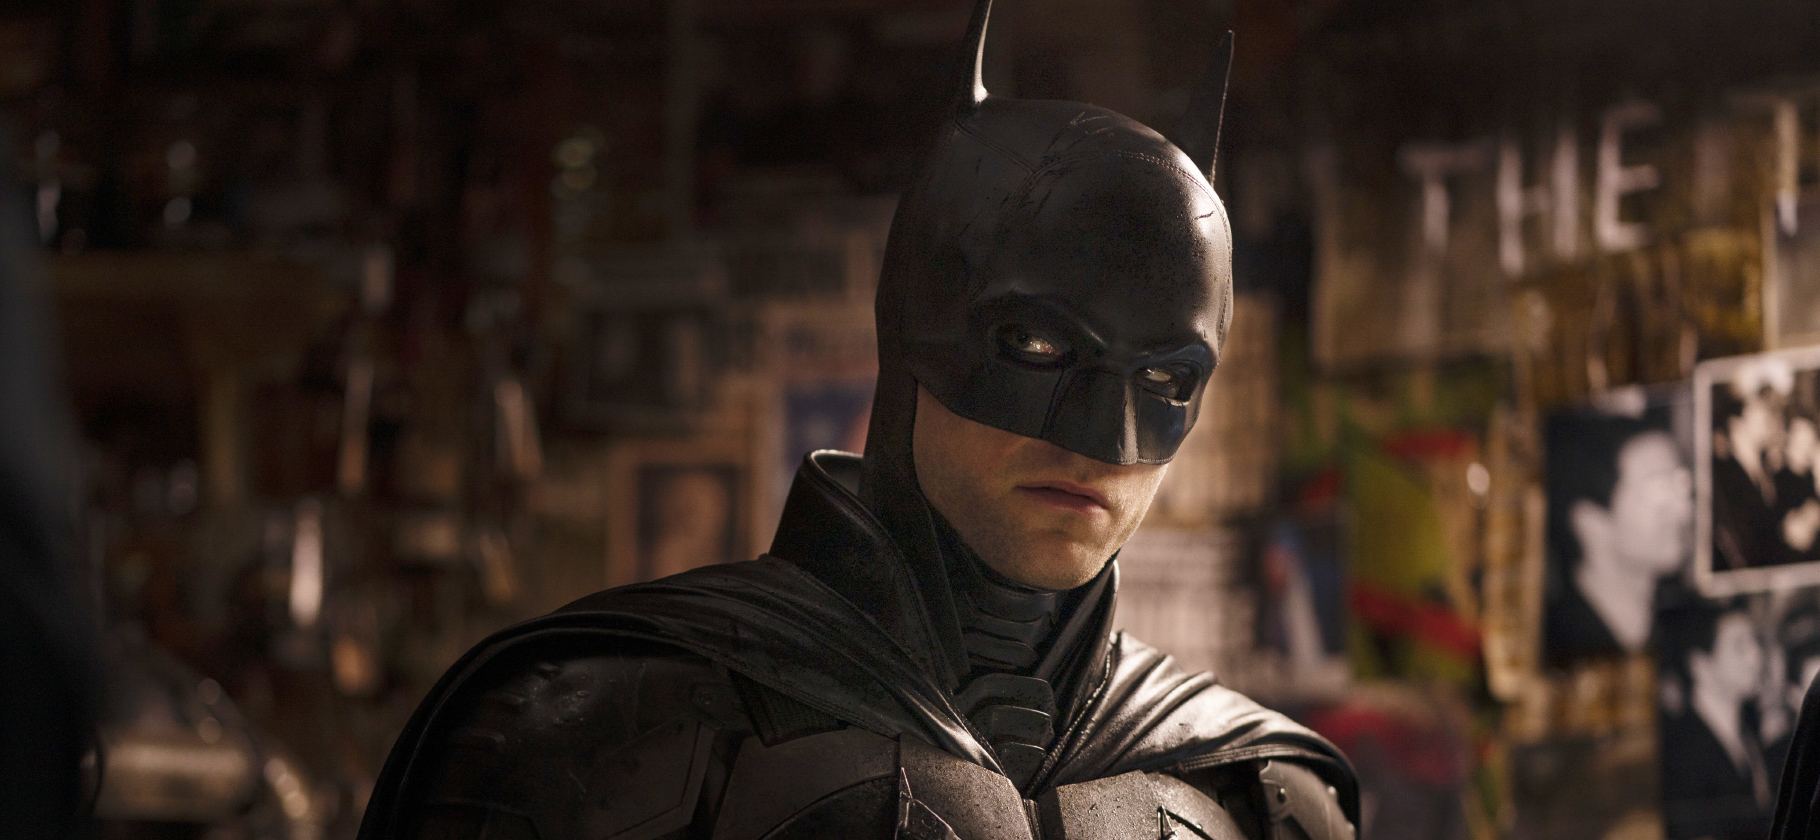 «Бэтмен»: чем удивляет мрачная супергероика в духе триллеров Дэвида Финчера